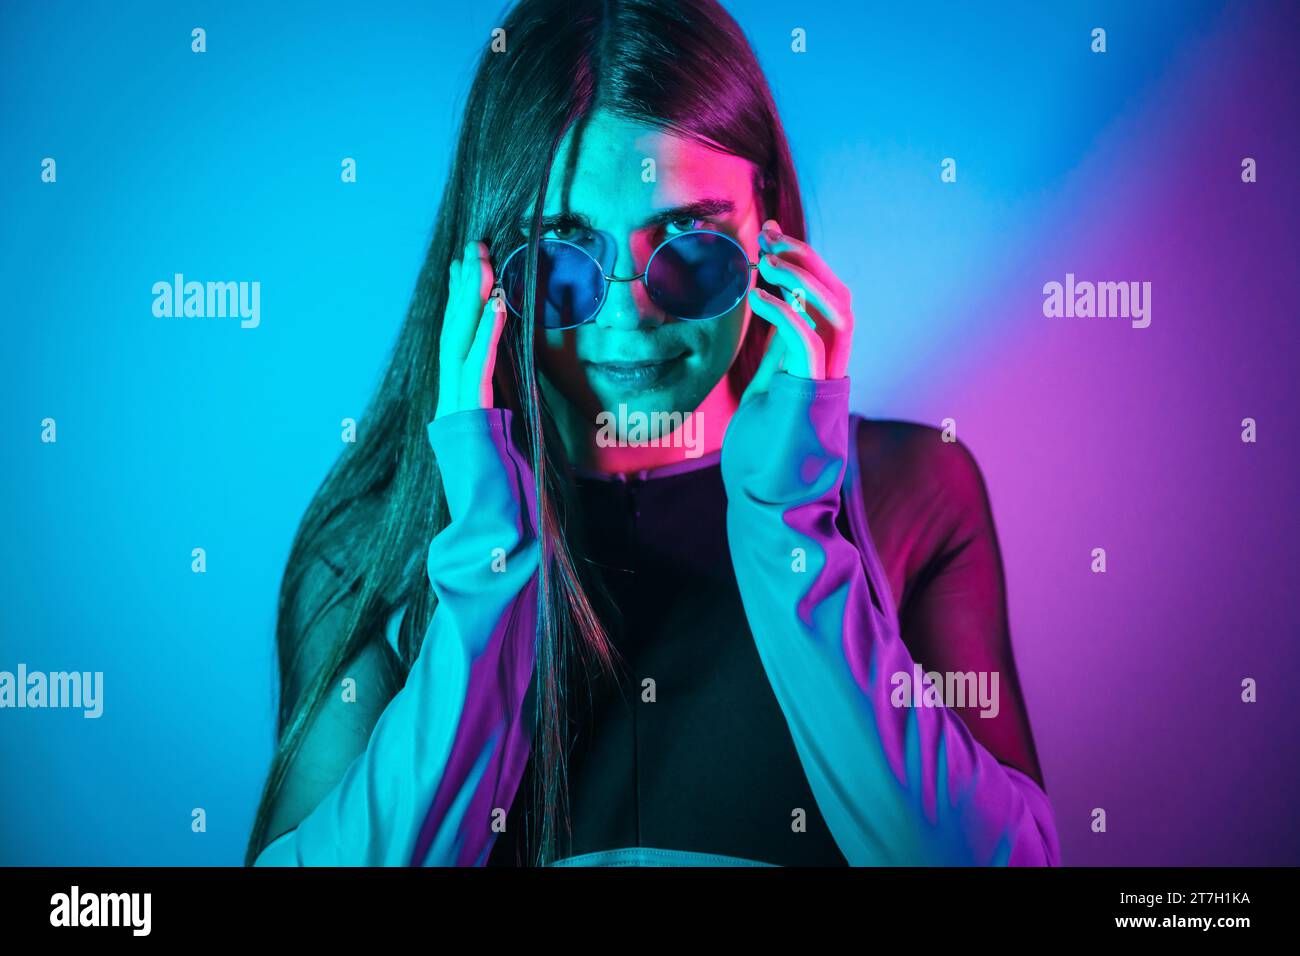 Futuristic studio portrait with neon lights of Non binary gender person wearing sunglasses Stock Photo